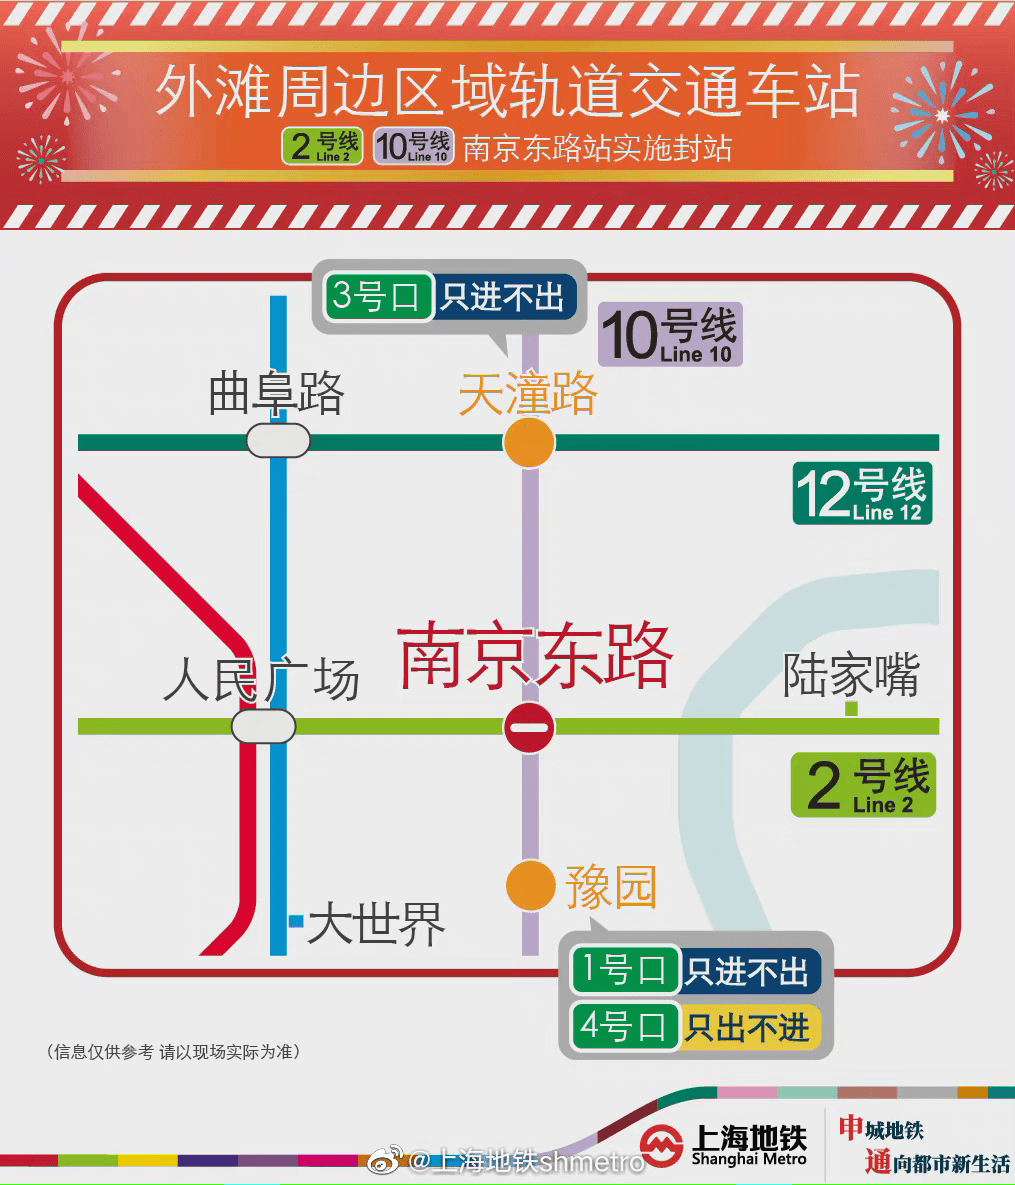 提醒:目前外滩,南京路步行街等区域客流较大,部分地铁站点采取临时